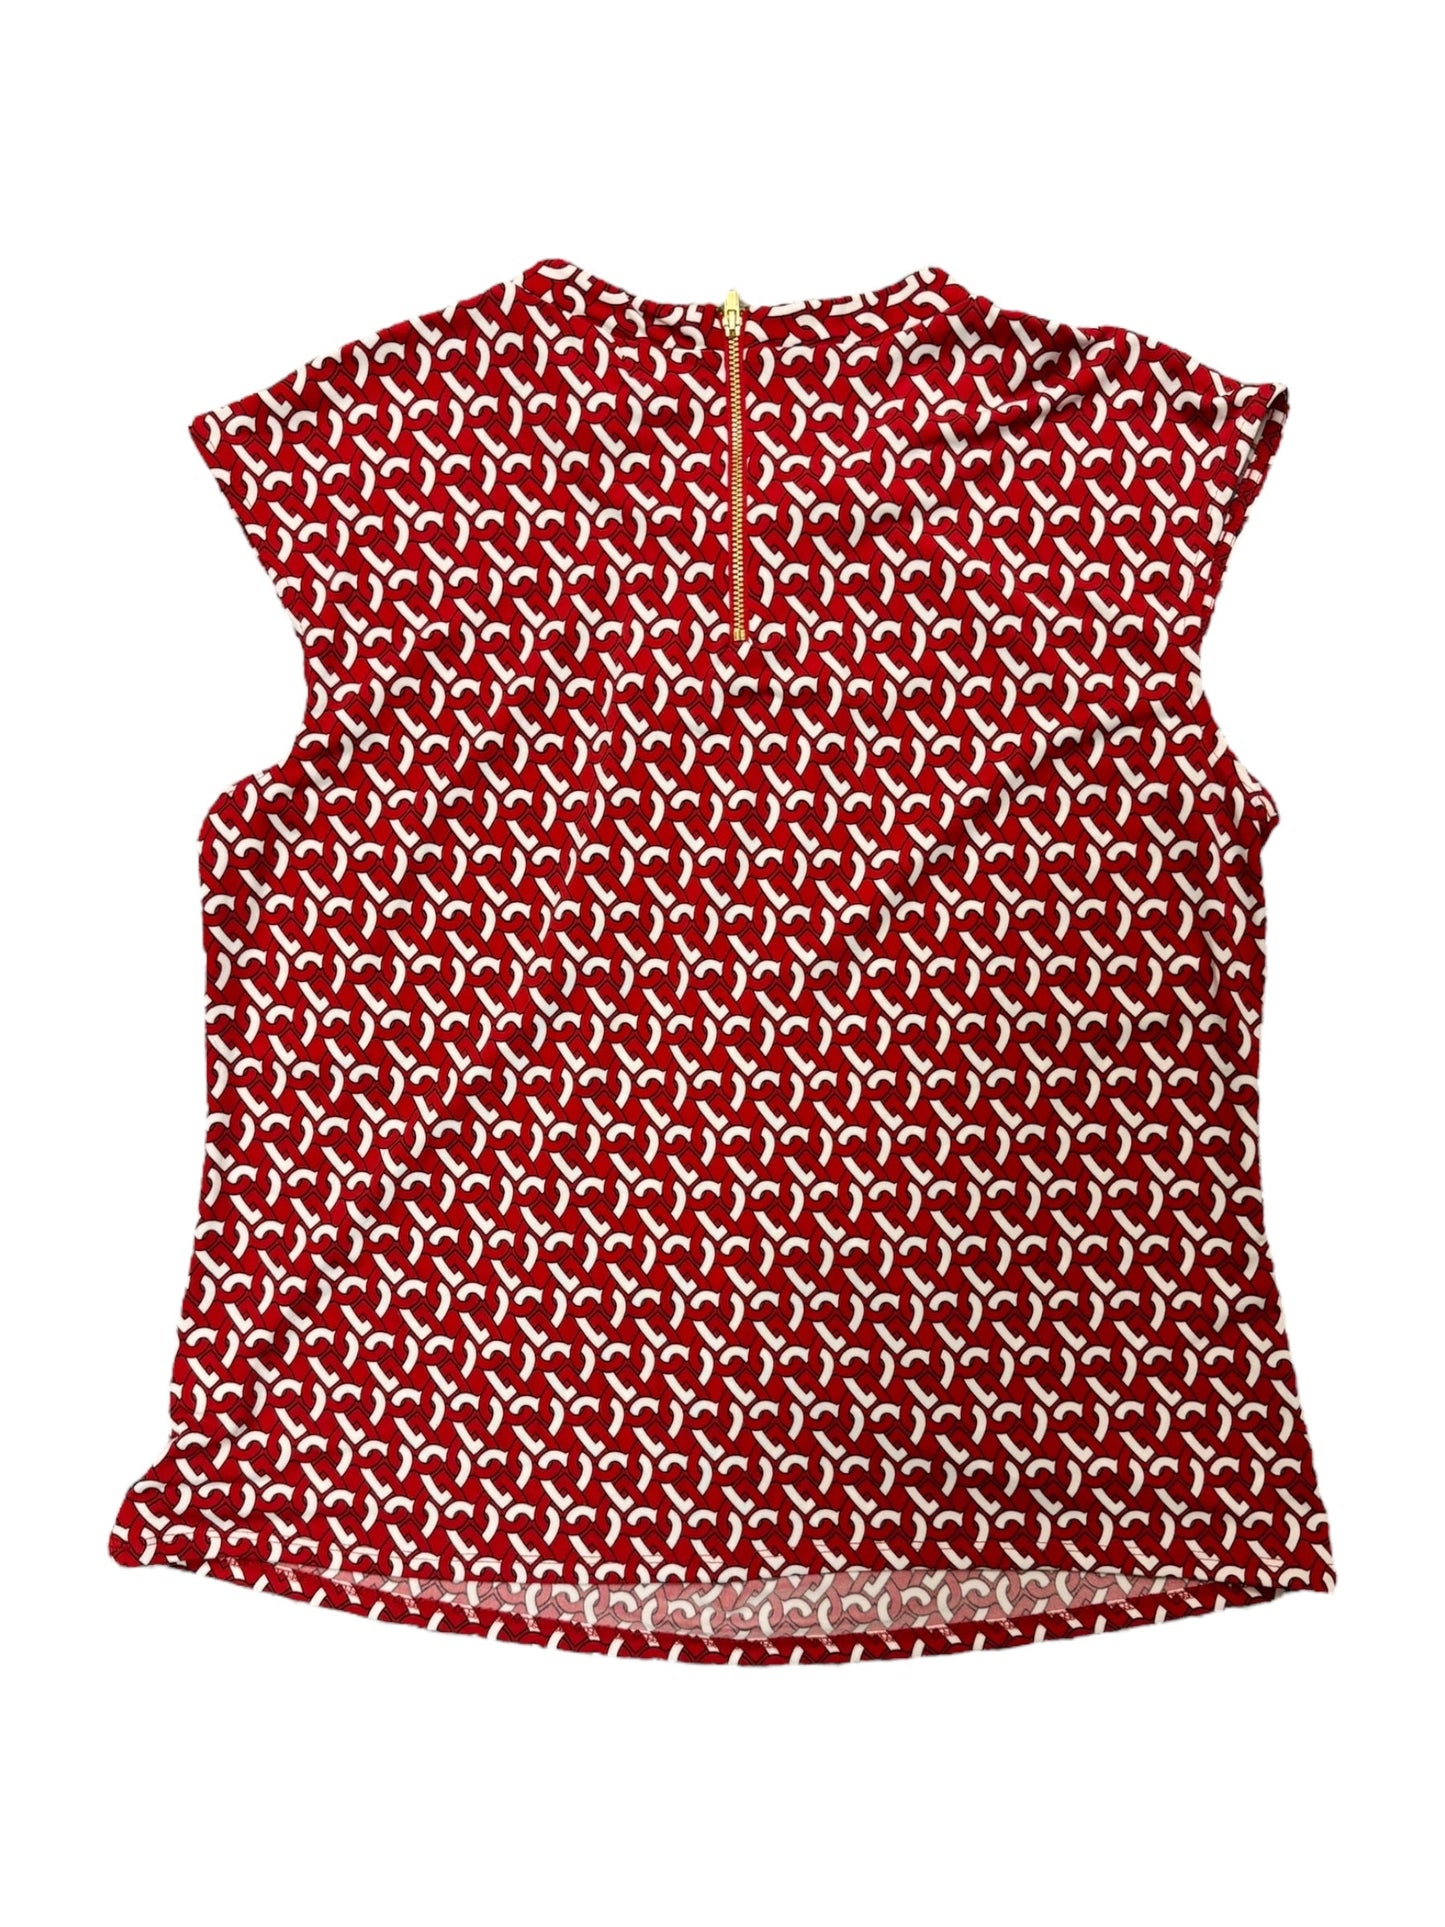 Blouse Short Sleeve By Liz Claiborne  Size: Petite L